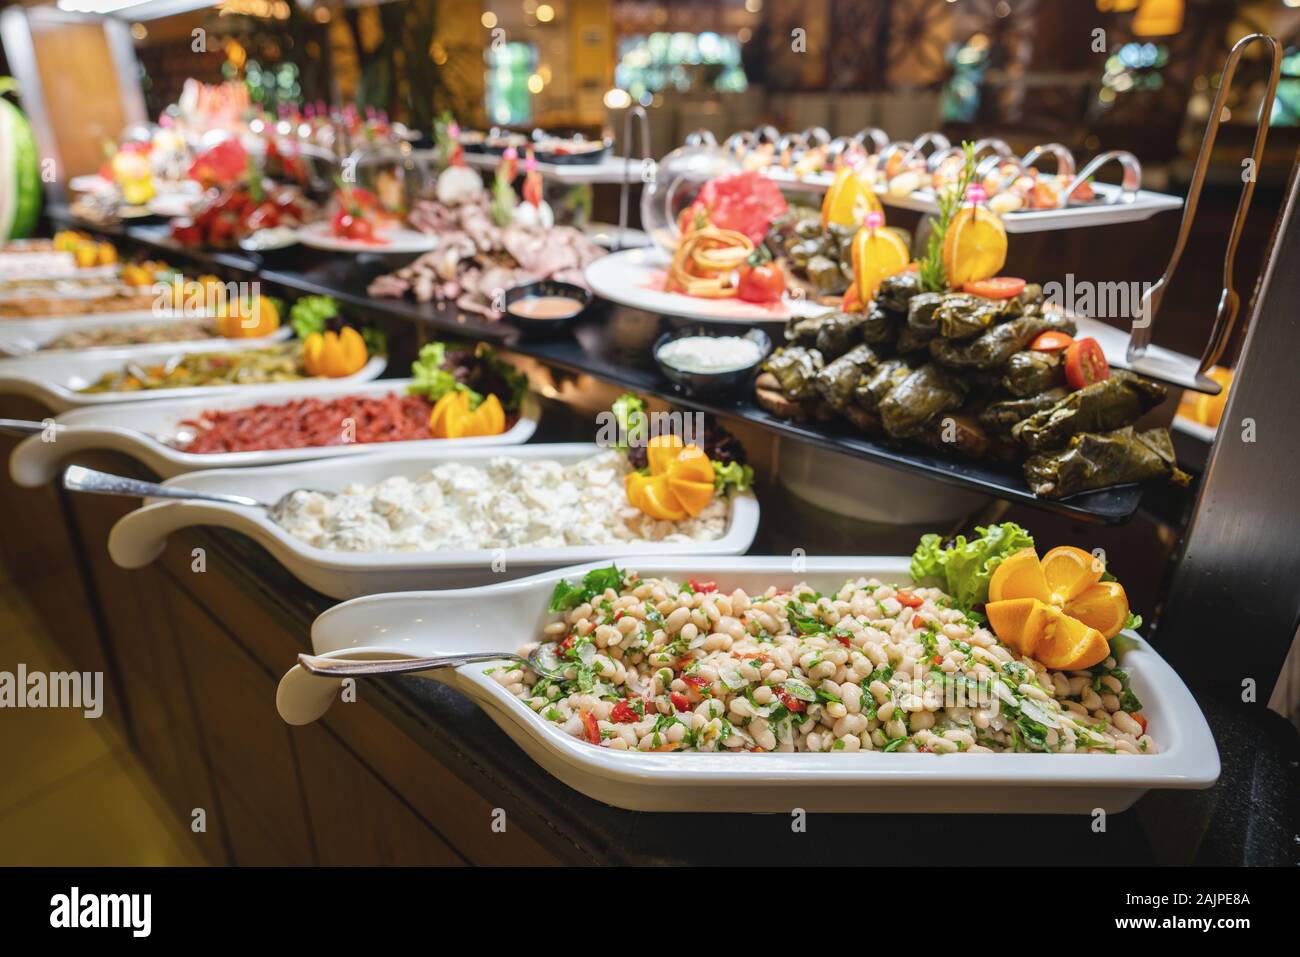 Un délicieux apéritif et buffet de salades avec diverses options dans un restaurant ou hôtel. Banque D'Images